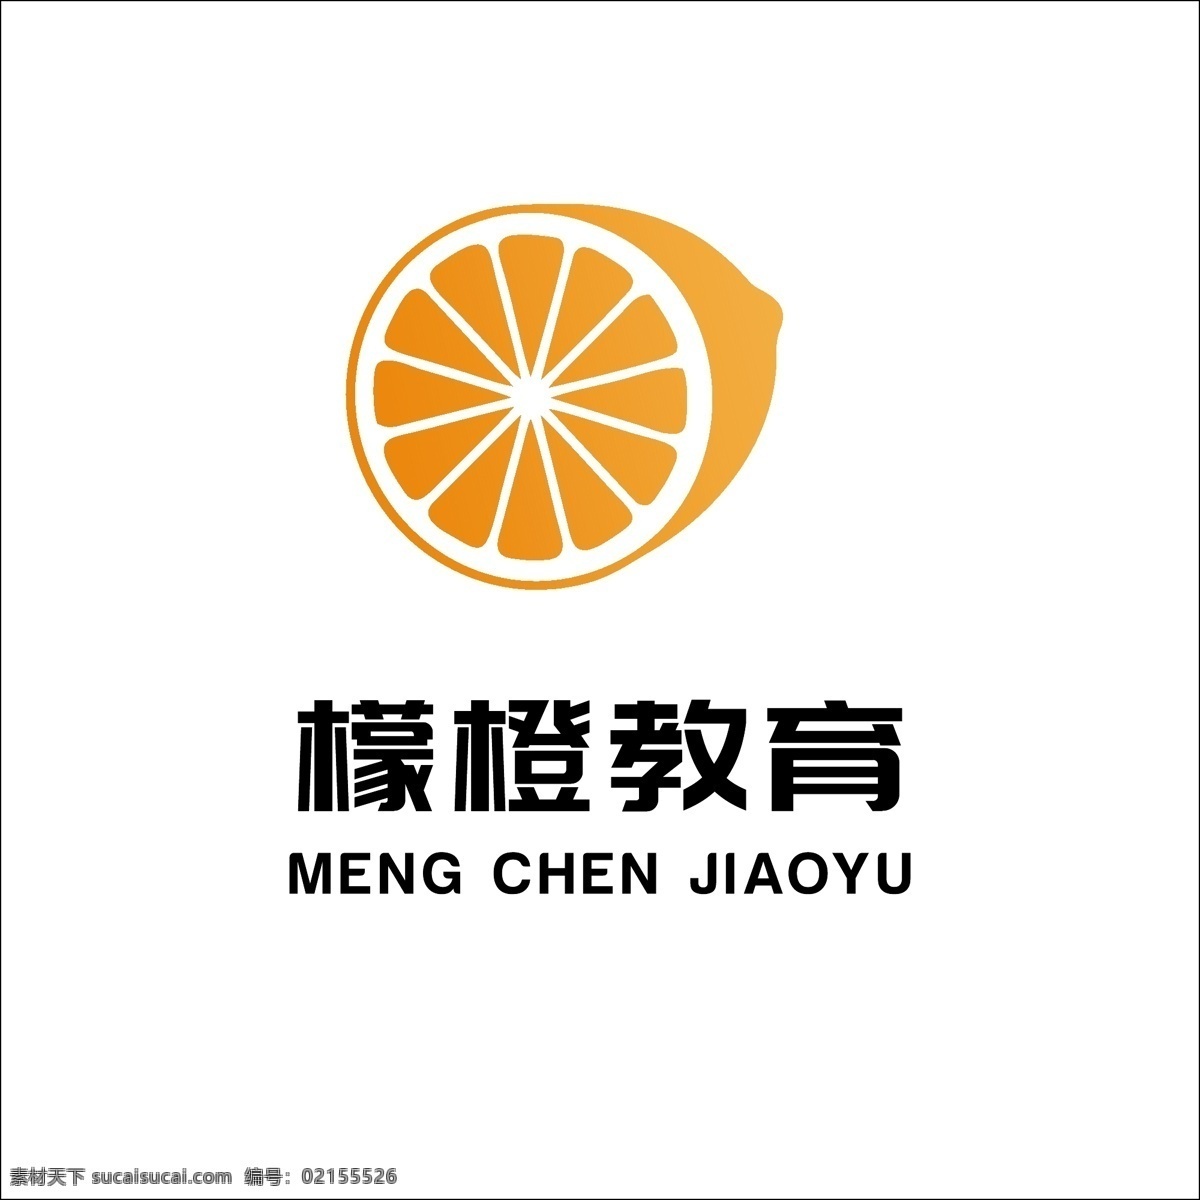 柠檬 类 檬 橙 教育 水果 通用 互联网 logo 企业logo 教育logo 檬橙logo 水果logo 通用logo